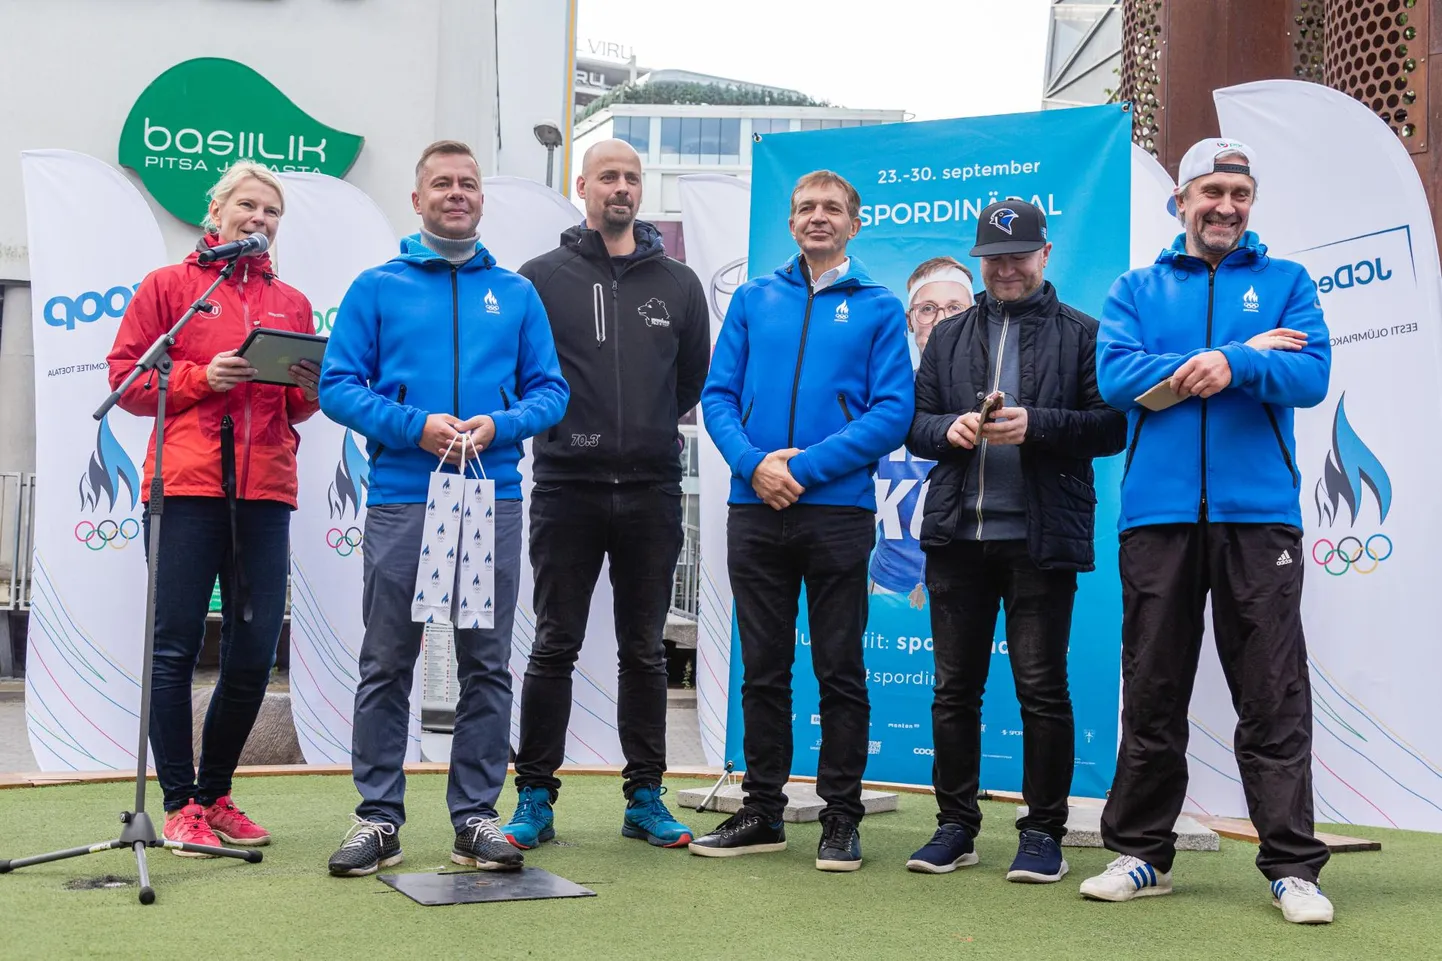 Spordinädala avaüritus 2019. aastal Tallinnas Rotermanni kvartalis